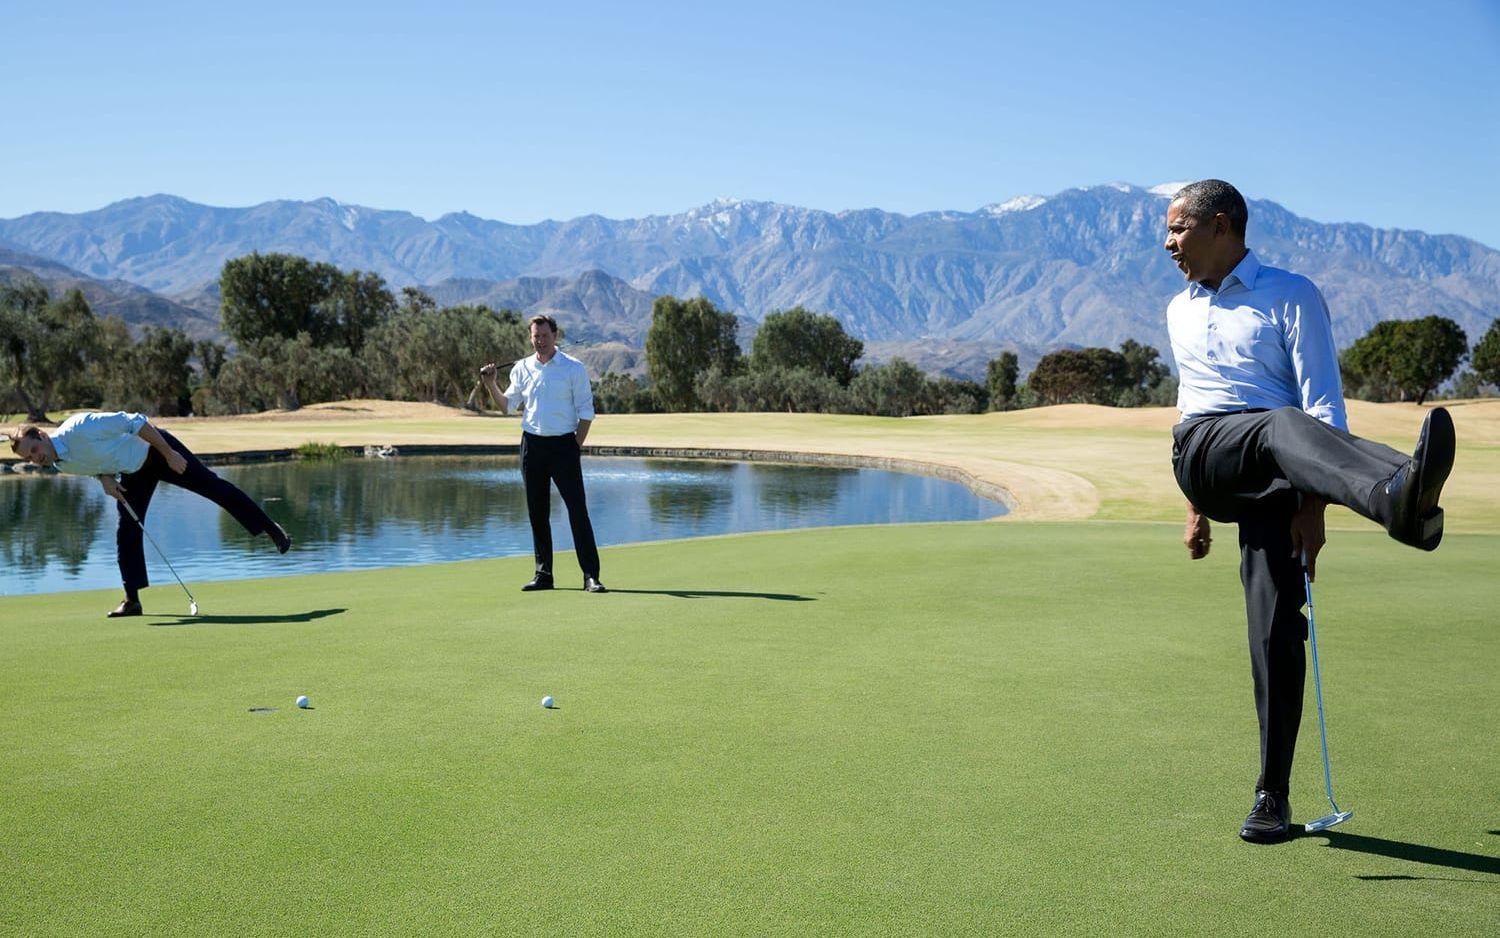 16 februari, 2016: Presidenten passar på att spela lite golf med några medarbetare från Vita Huset.